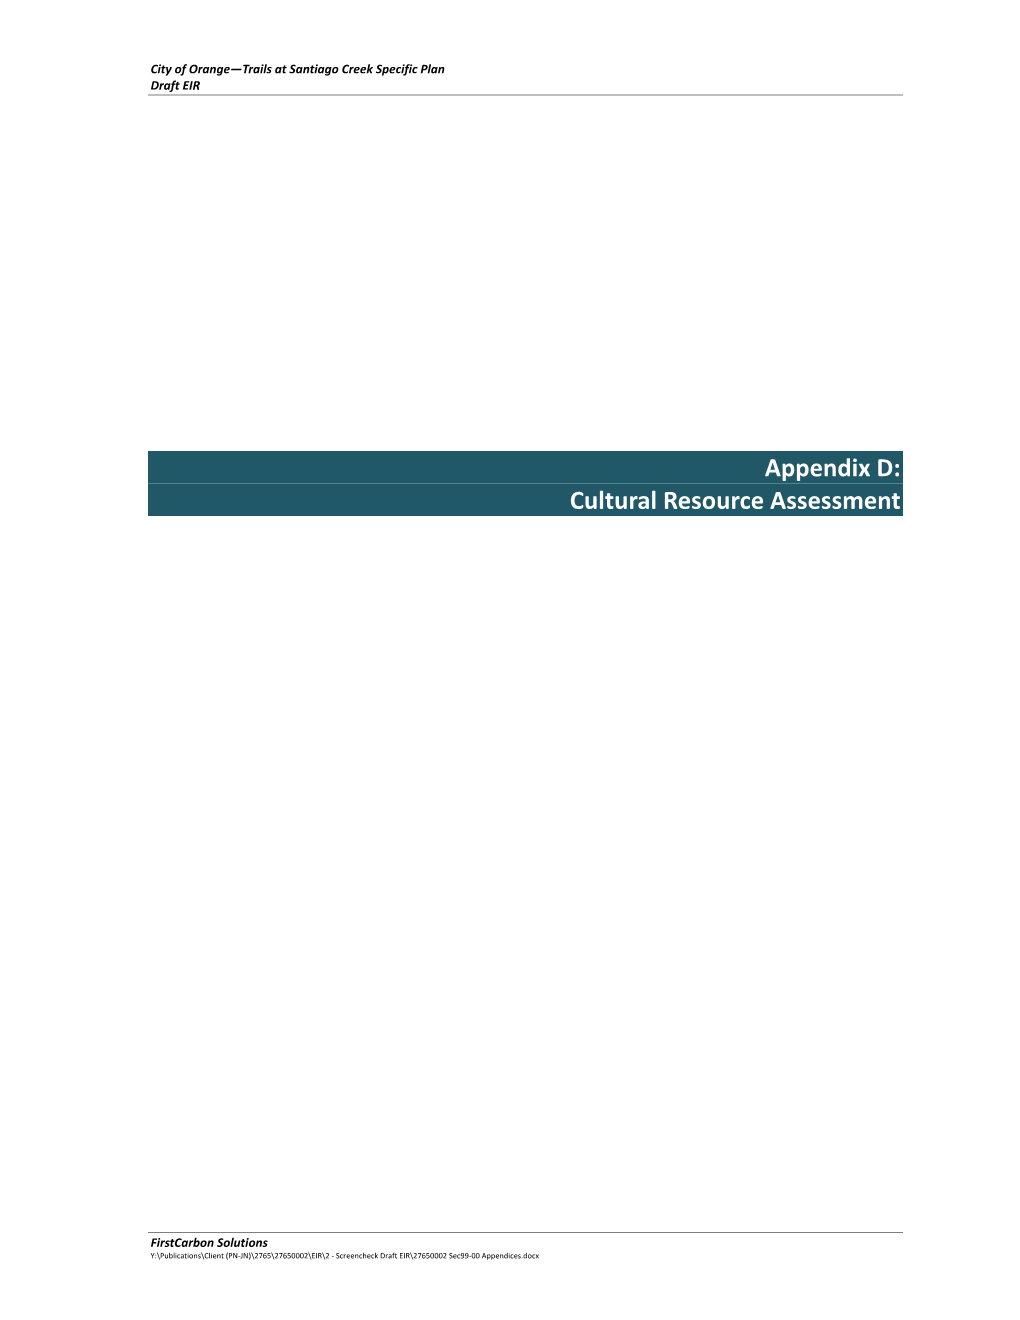 Appendix D: Cultural Resource Assessment